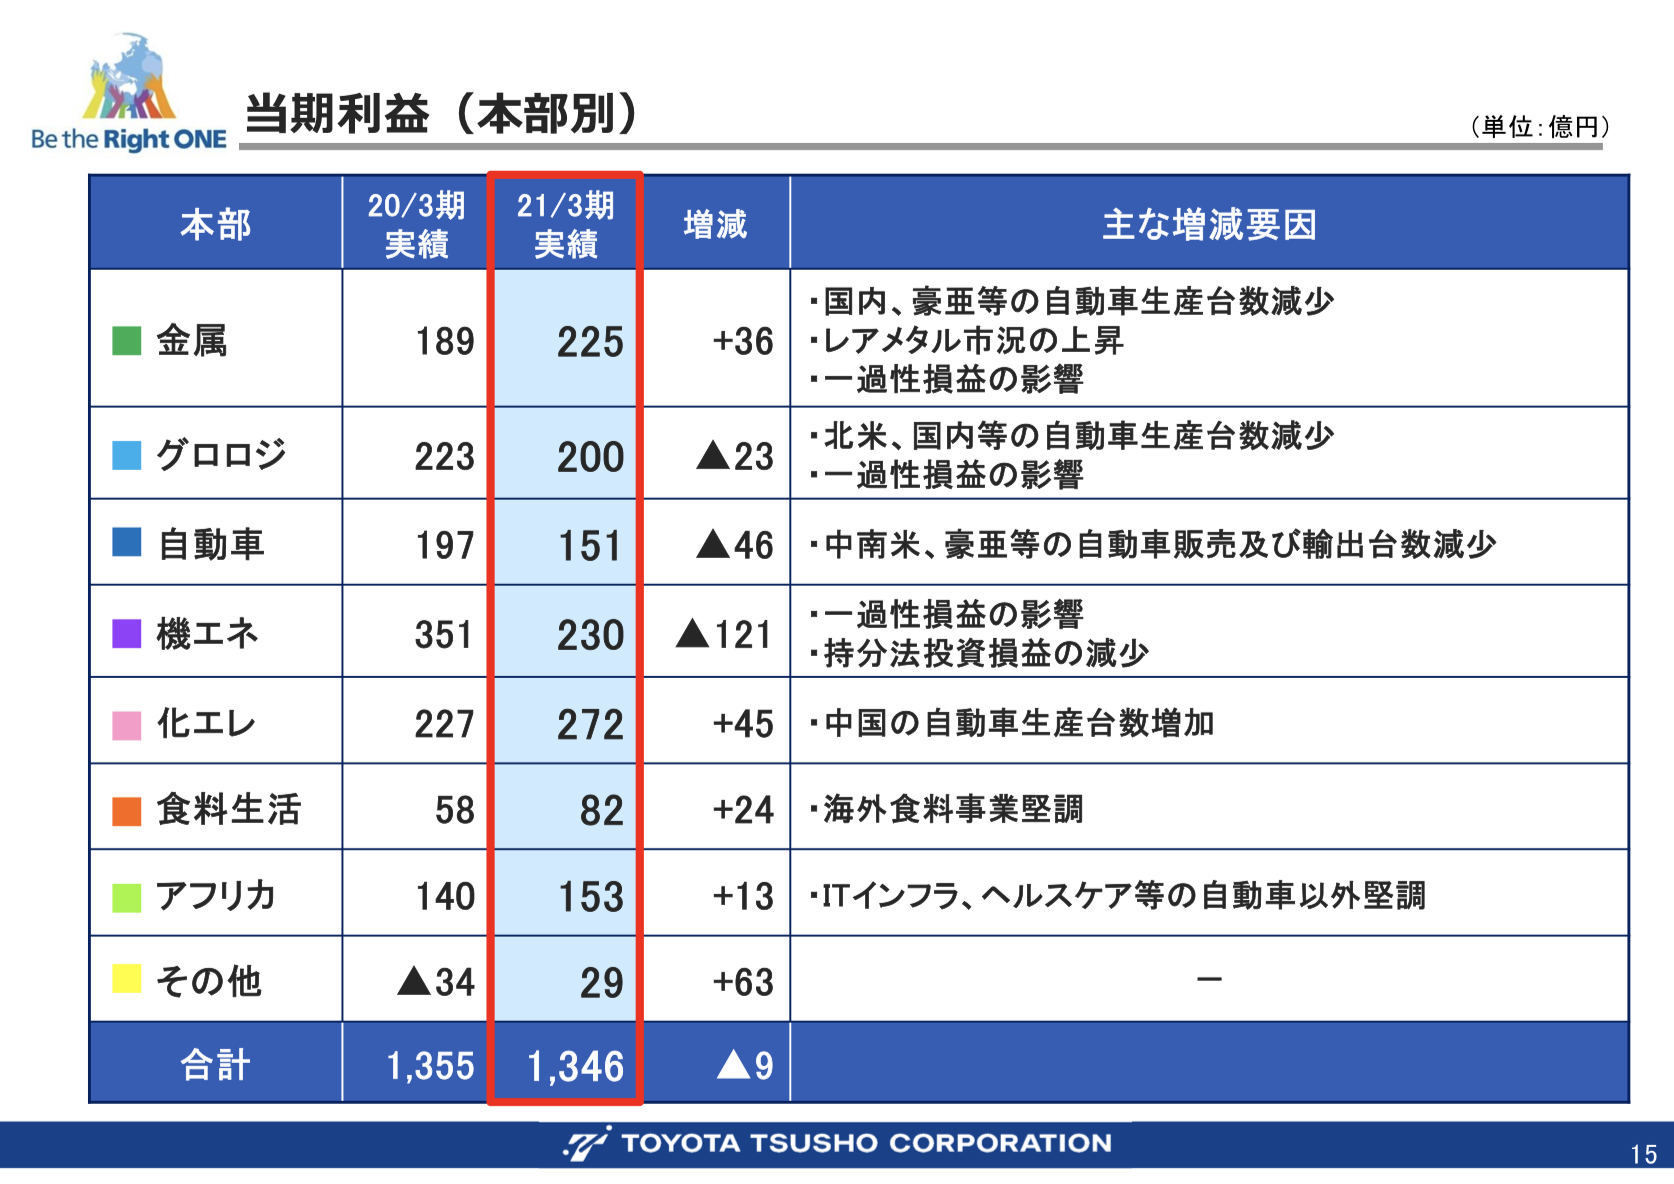 豊田通商株式会社 2021年3月期 連結決算概要及び 2022年3月期 業績予想